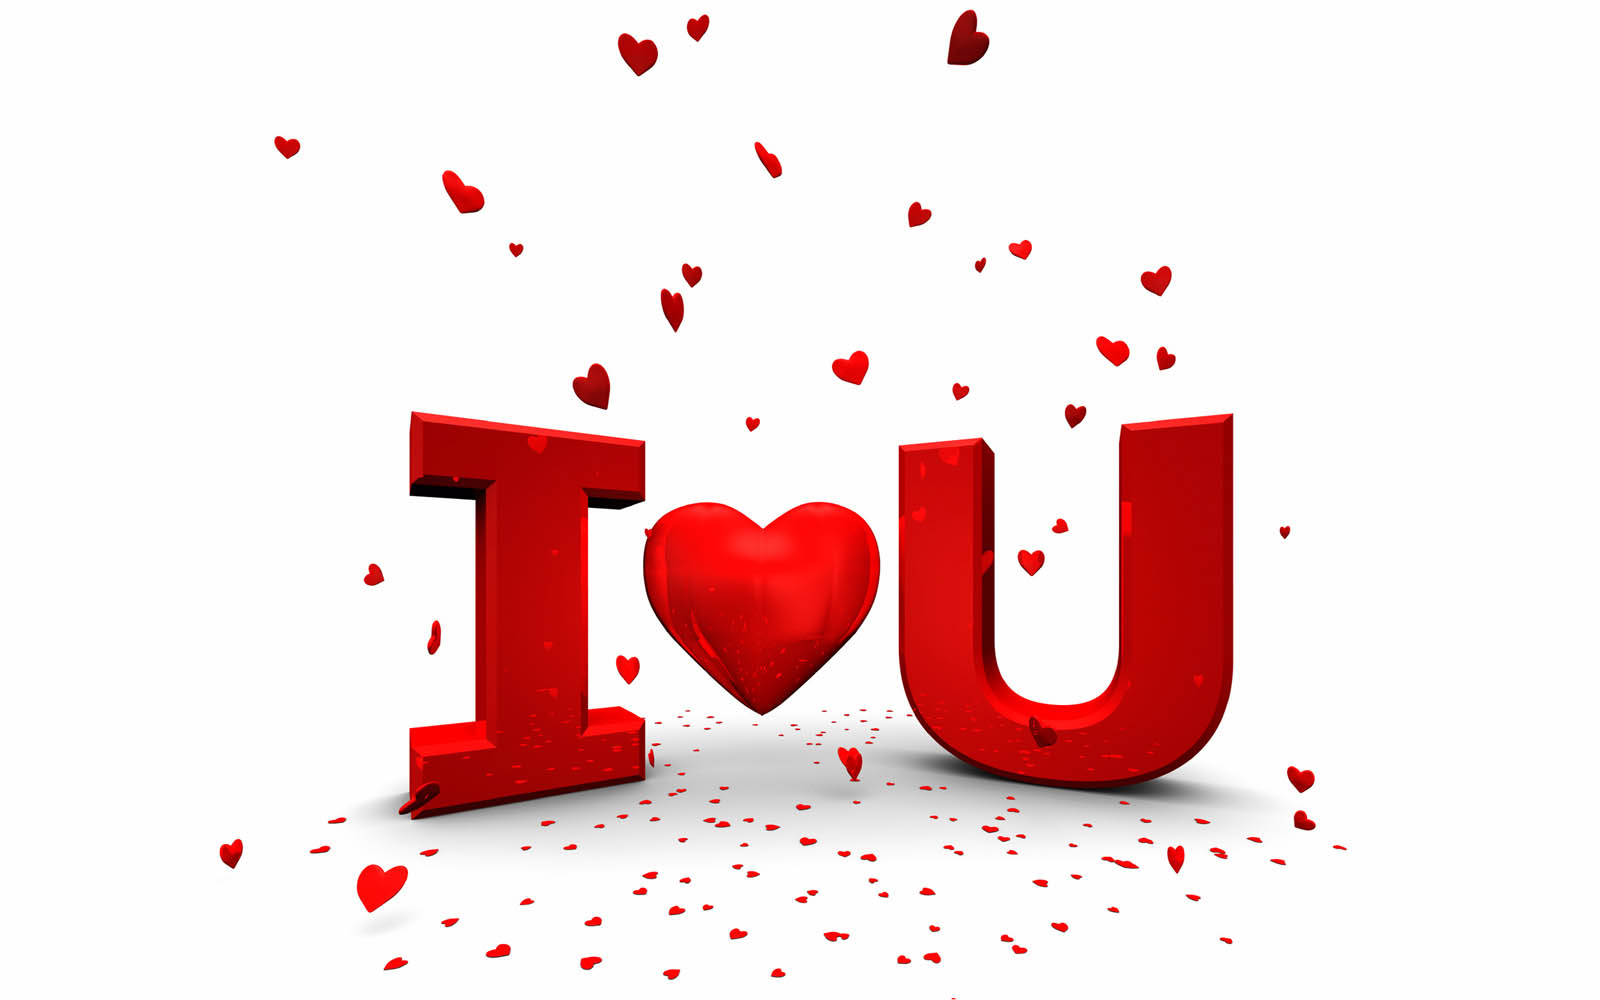 http://3.bp.blogspot.com/-UmXvK32aTKI/T8sQCs4ZzkI/AAAAAAAADhQ/tK5OeVjQe3U/s1600/I+Love+You+Wallpapers+1.jpg